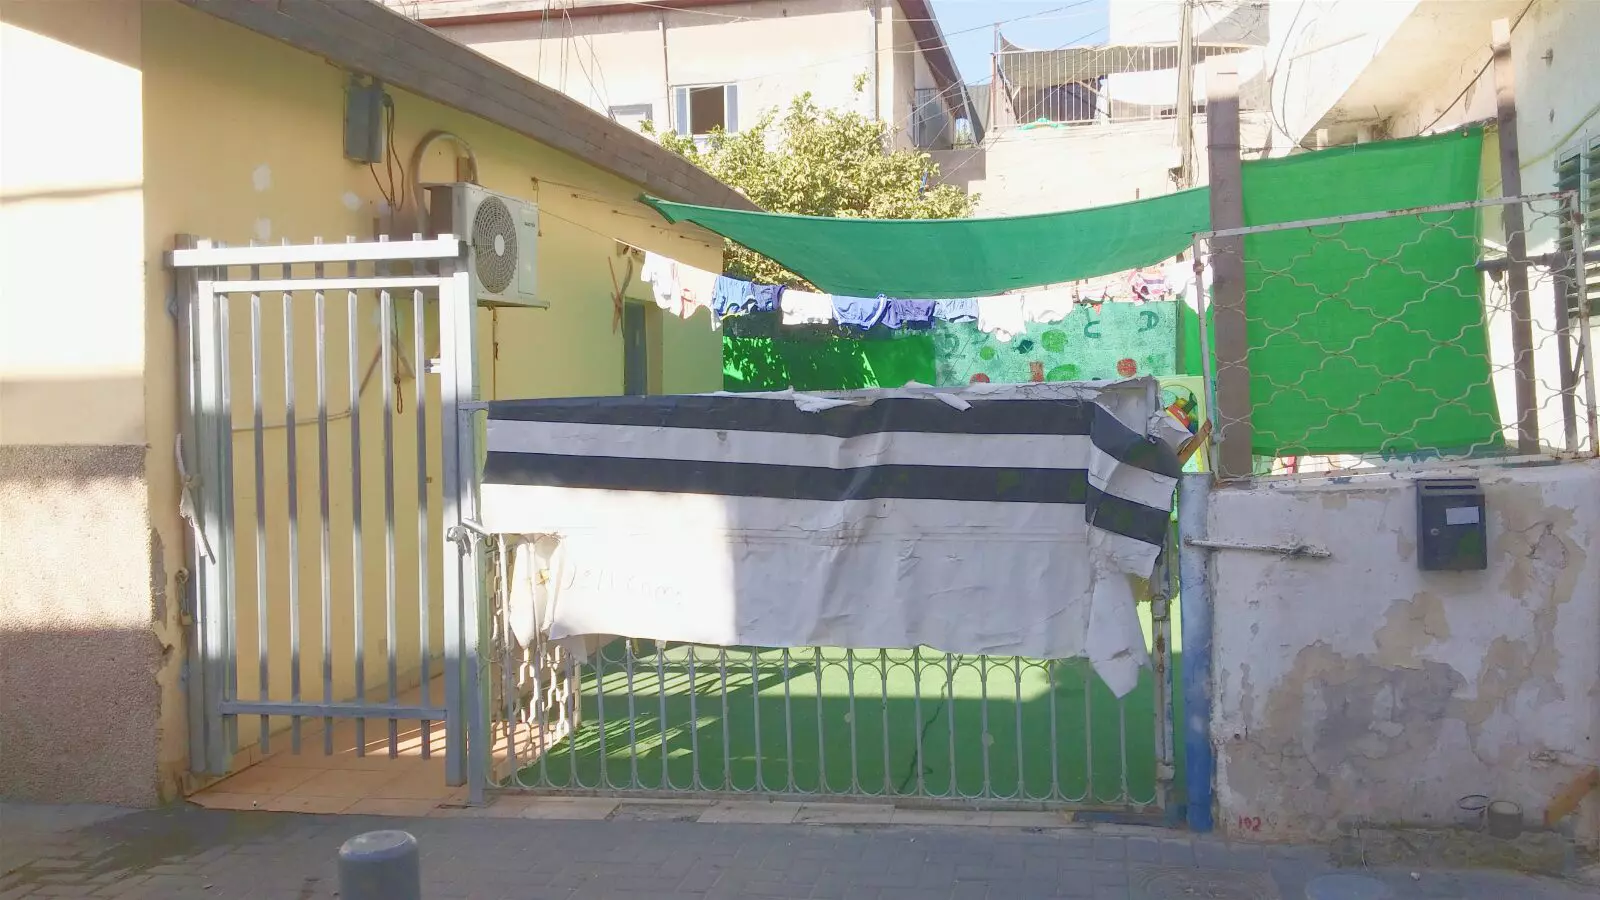 גן ילדים בשכונת התקווה בתל אביב שבו התגלה מקרה התעללות בפעוט, ספטמבר 2015